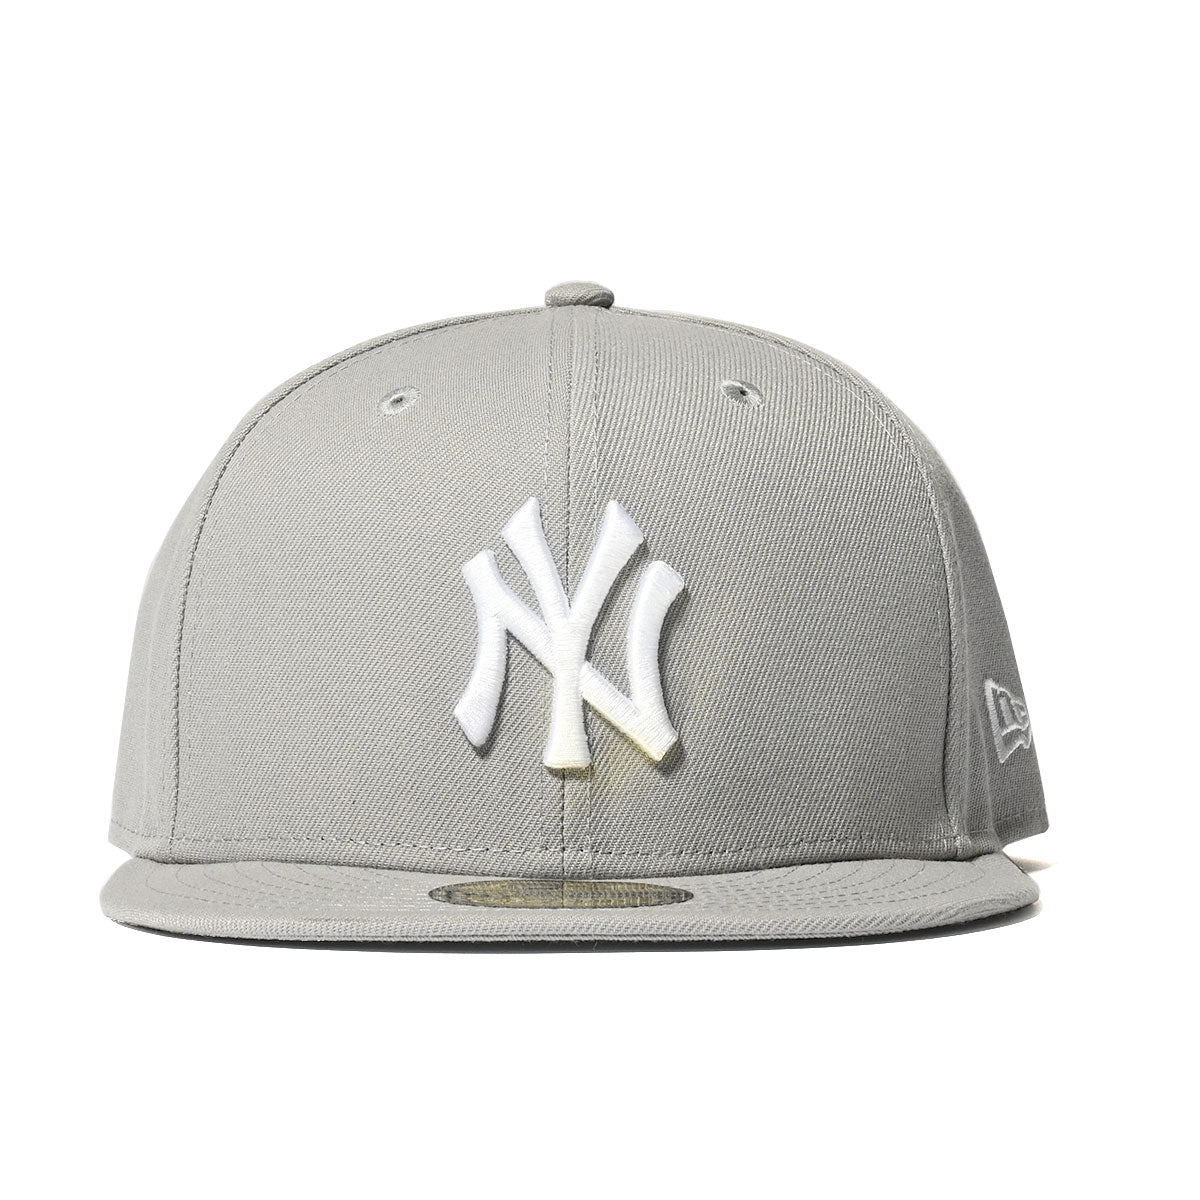 NEW ERA New York Yankees - 59FIFTY GRAY